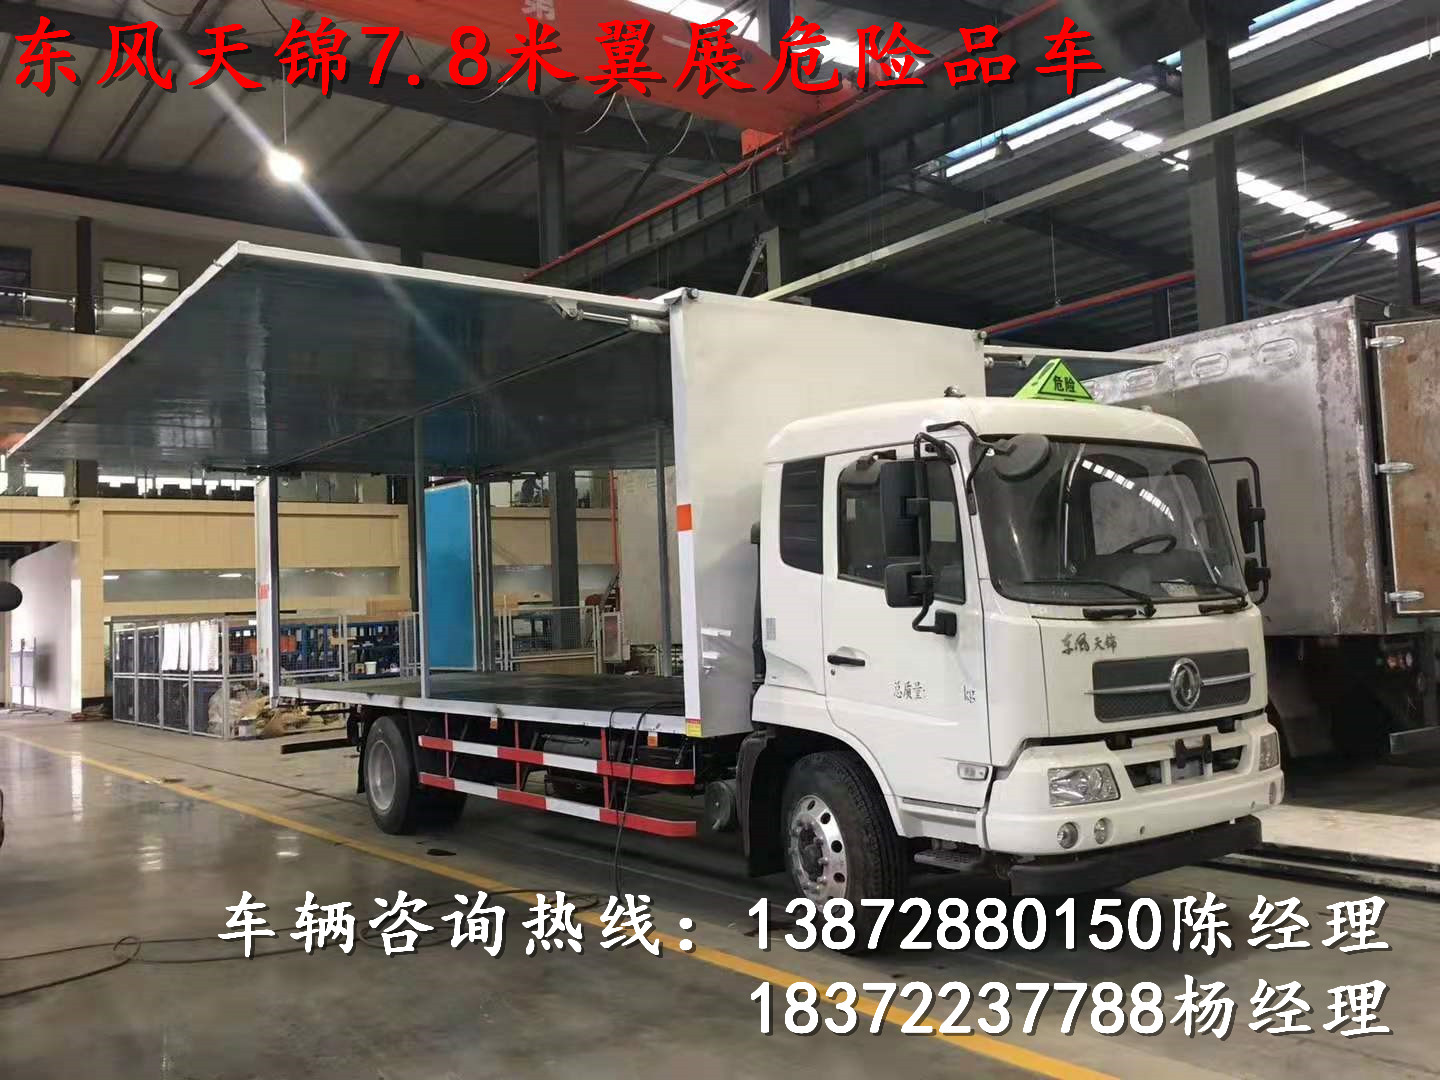 甘孜藏族自治州柳汽乘龙6米汽油运输车详细配置